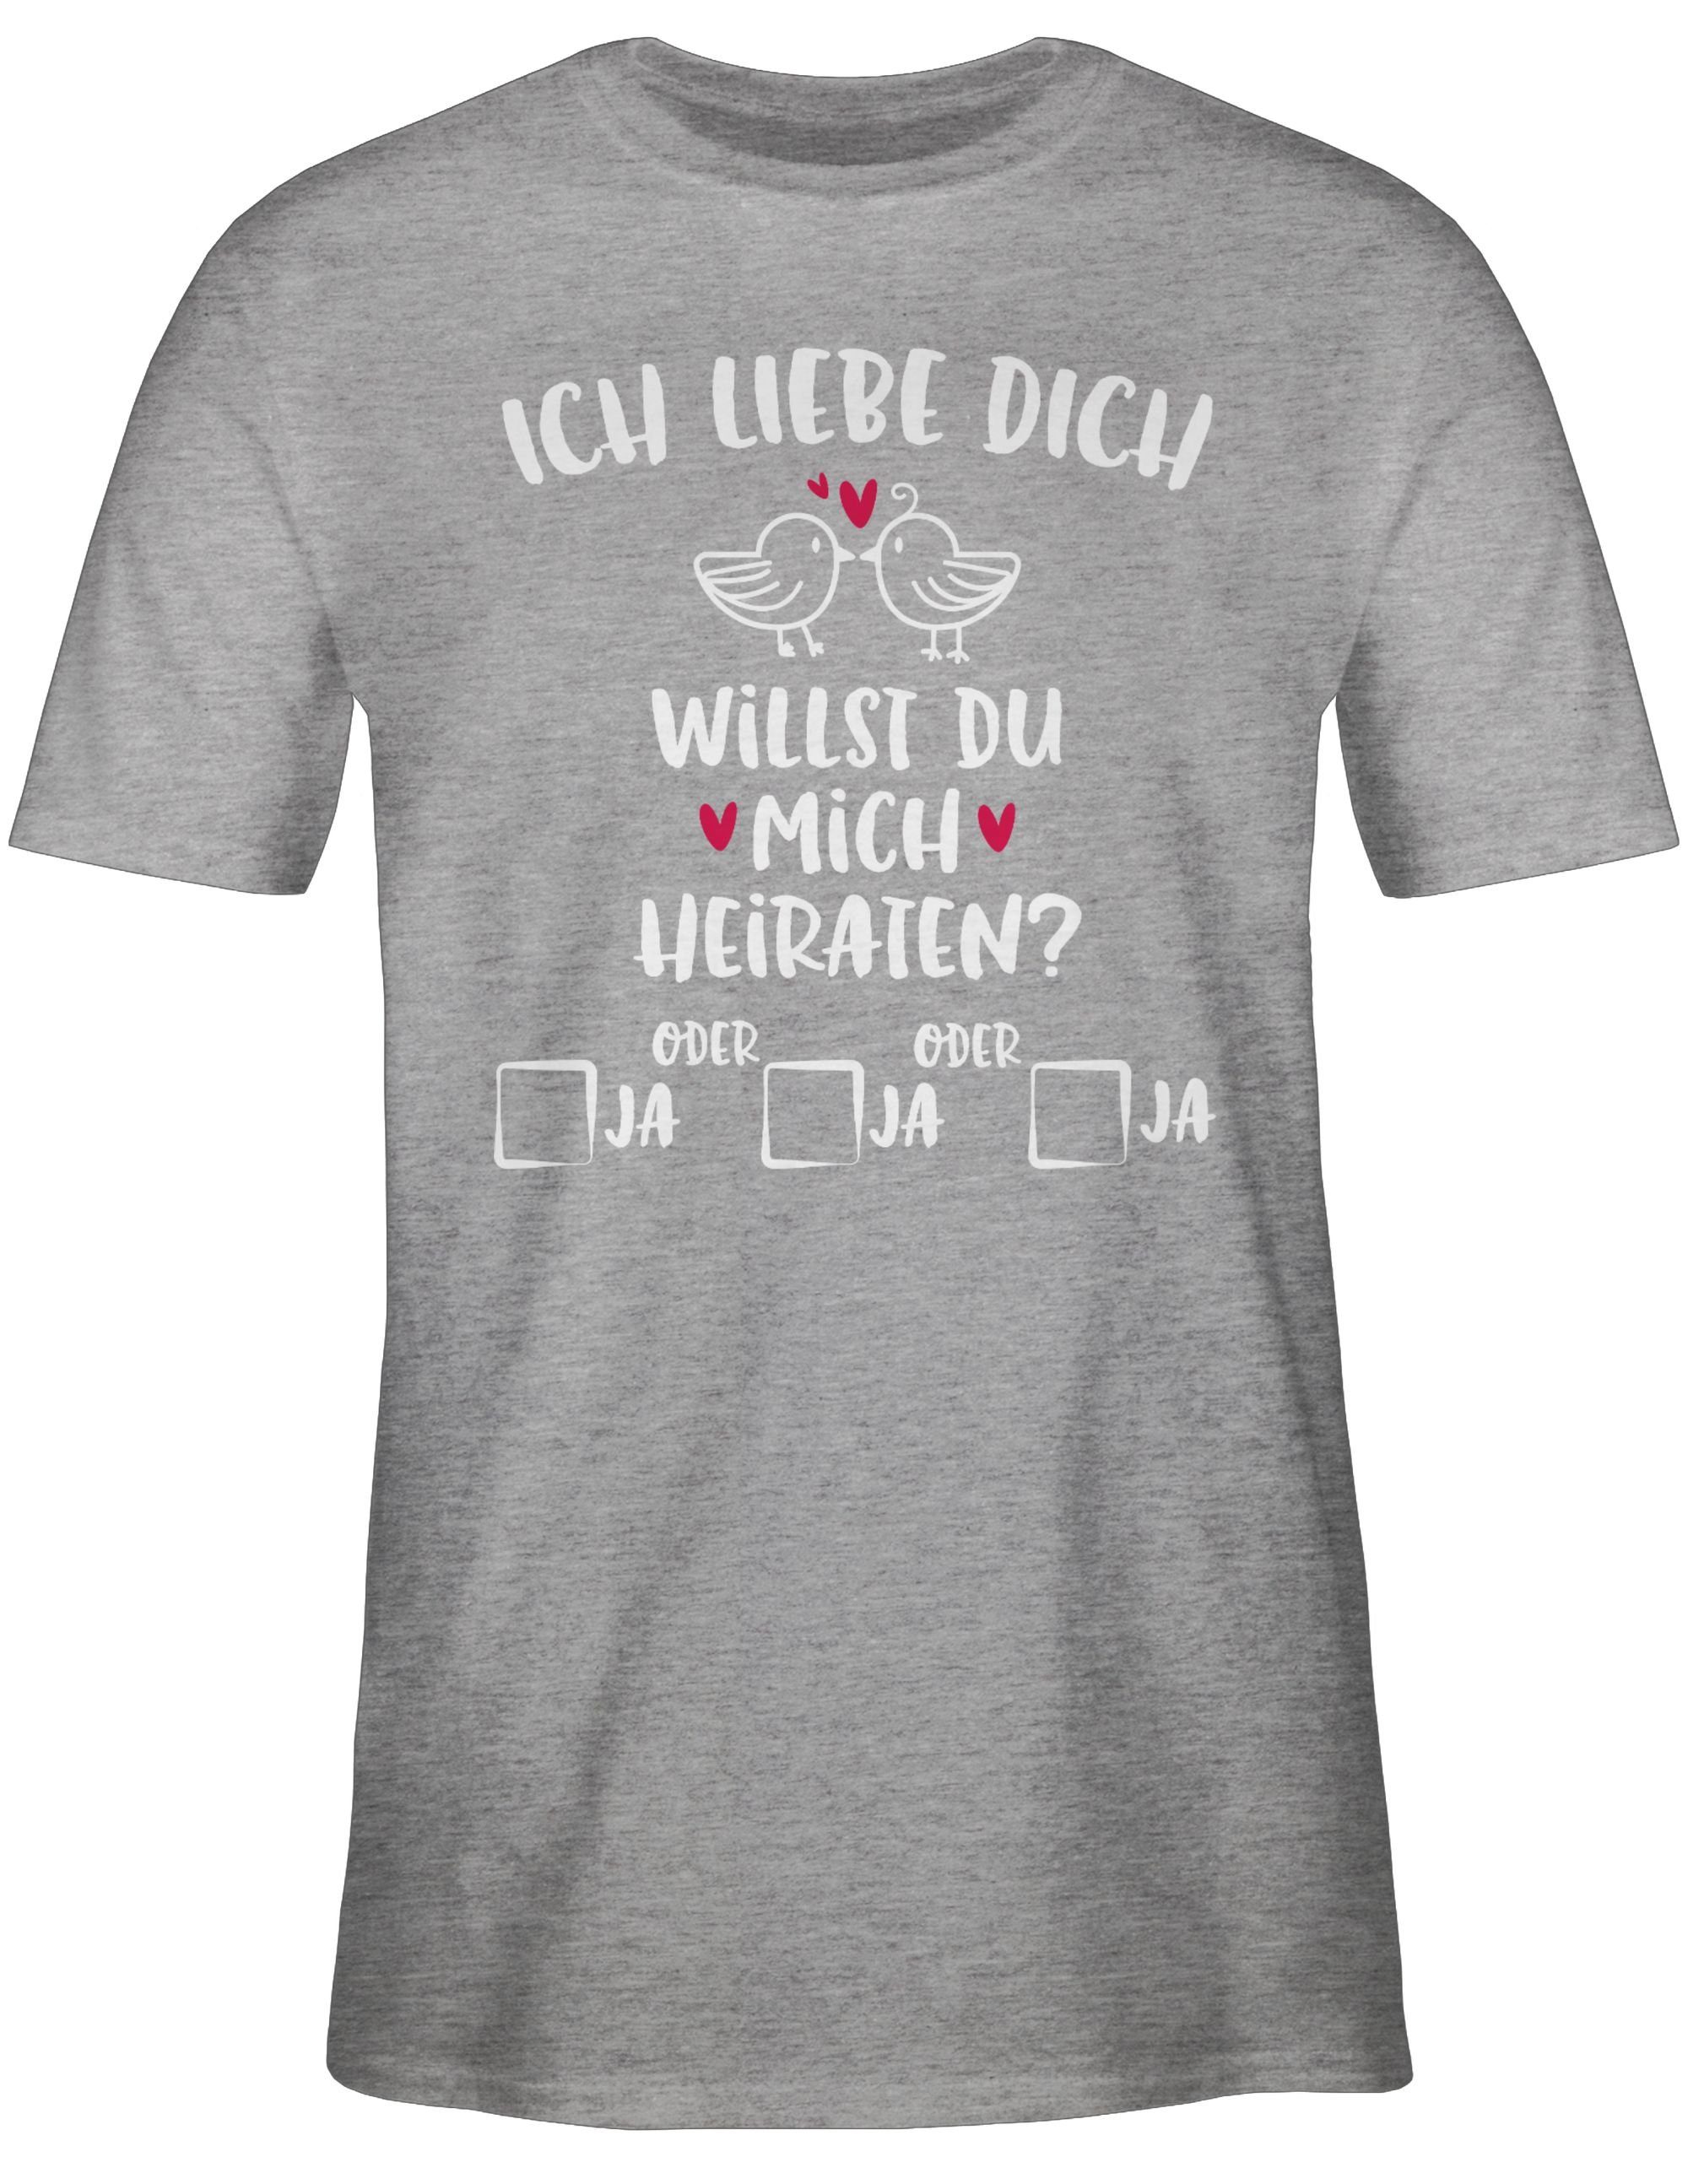 Herren - - mich Hochzeit Shirtracer T-Shirt 03 Willst Grau meliert du heiraten? weiß